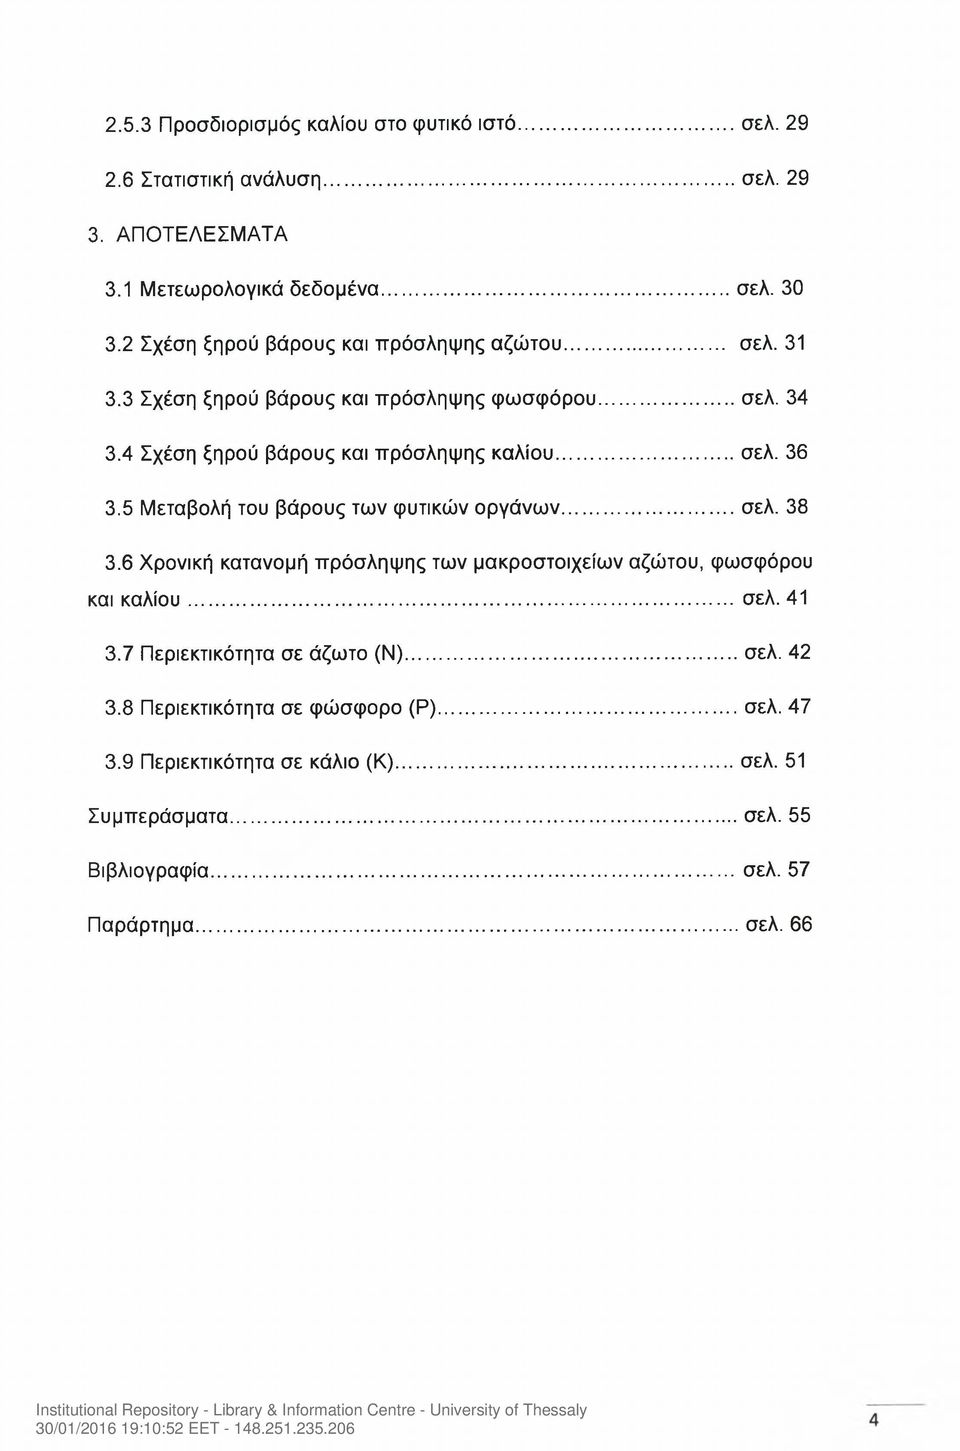 5 Μεταβολή του βάρους των φυτικών οργάνων...σελ. 38 3.6 Χρονική κατανομή πρόσληψης των μακροστοιχείων αζώτου, φωσφόρου και καλίου... σελ. 41 3.